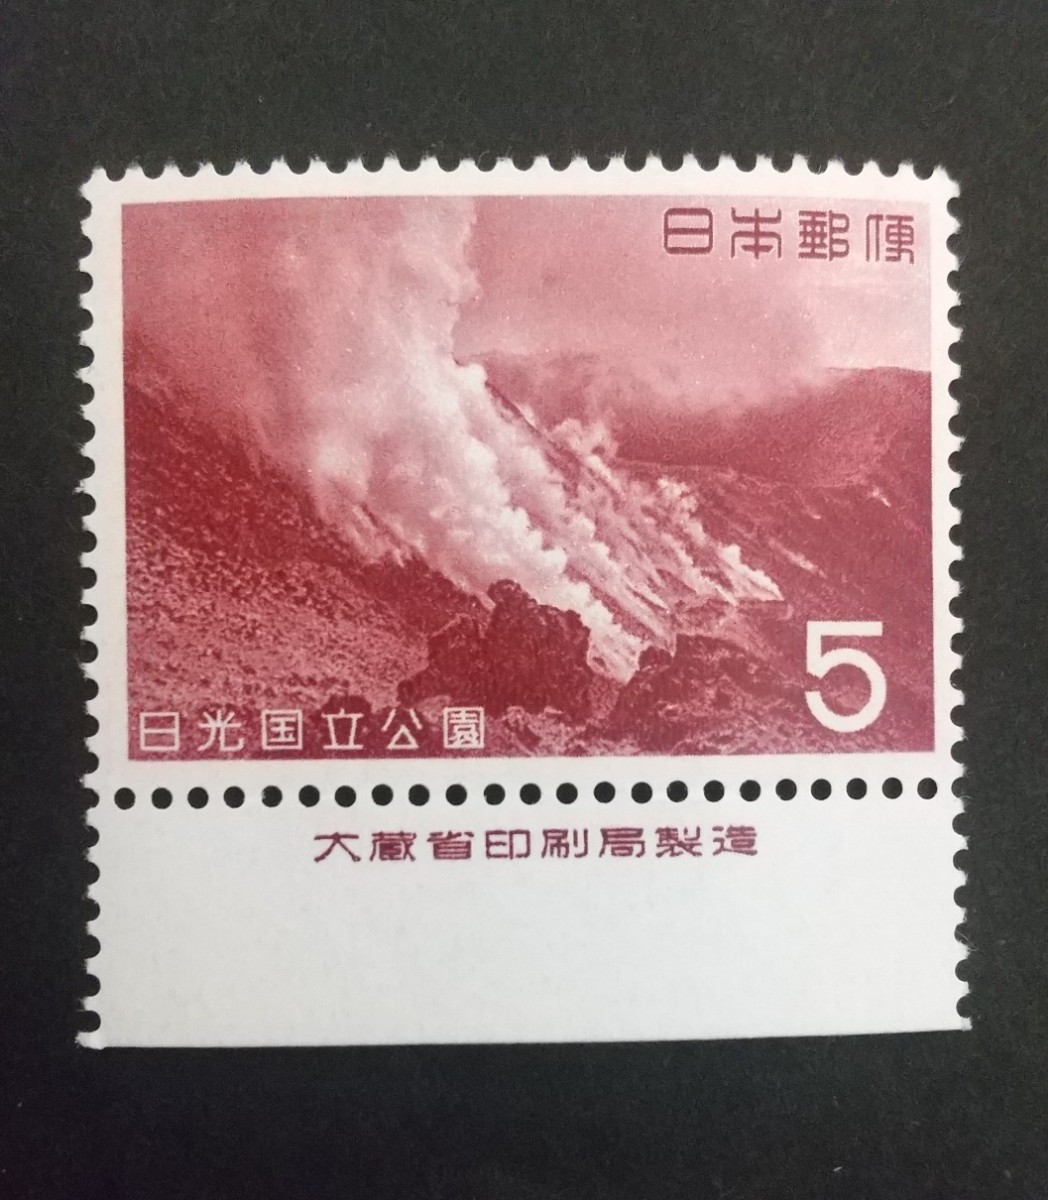 記念切手 日光国立公園 1962 大蔵省銘板付き 未使用品 (ST-10 ST-TG)_画像1